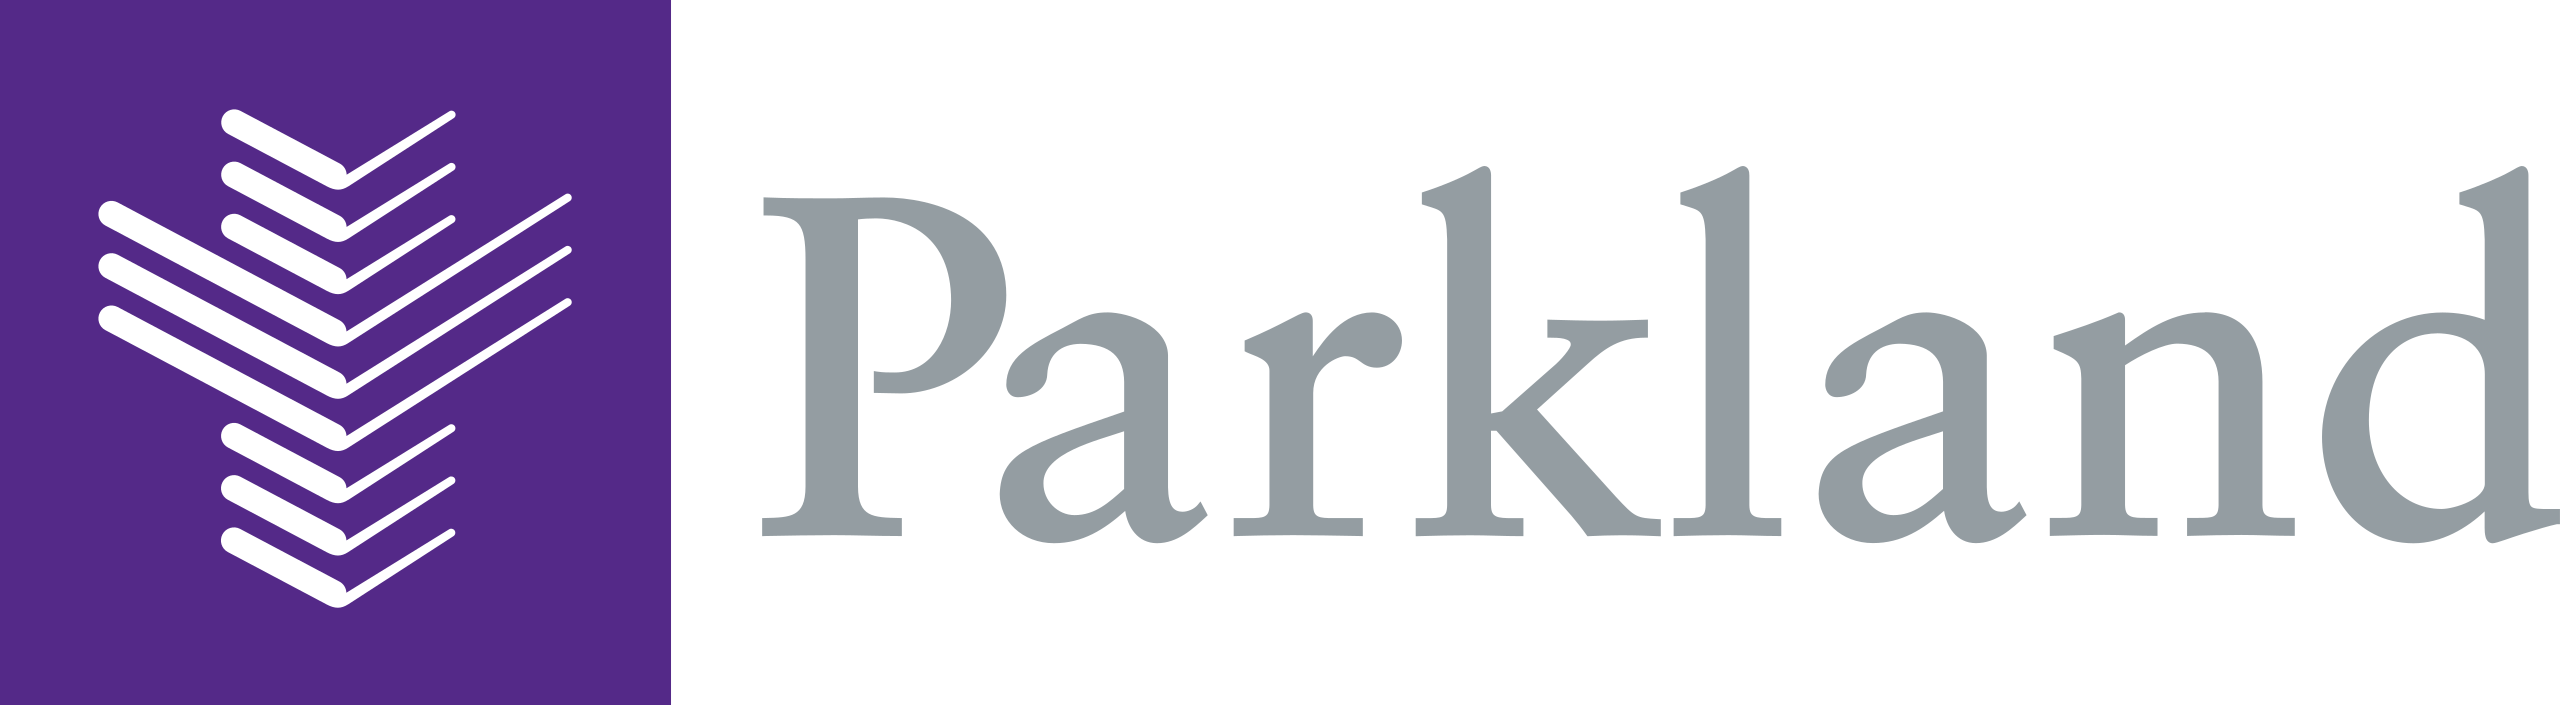 Parkland Hospital Logo